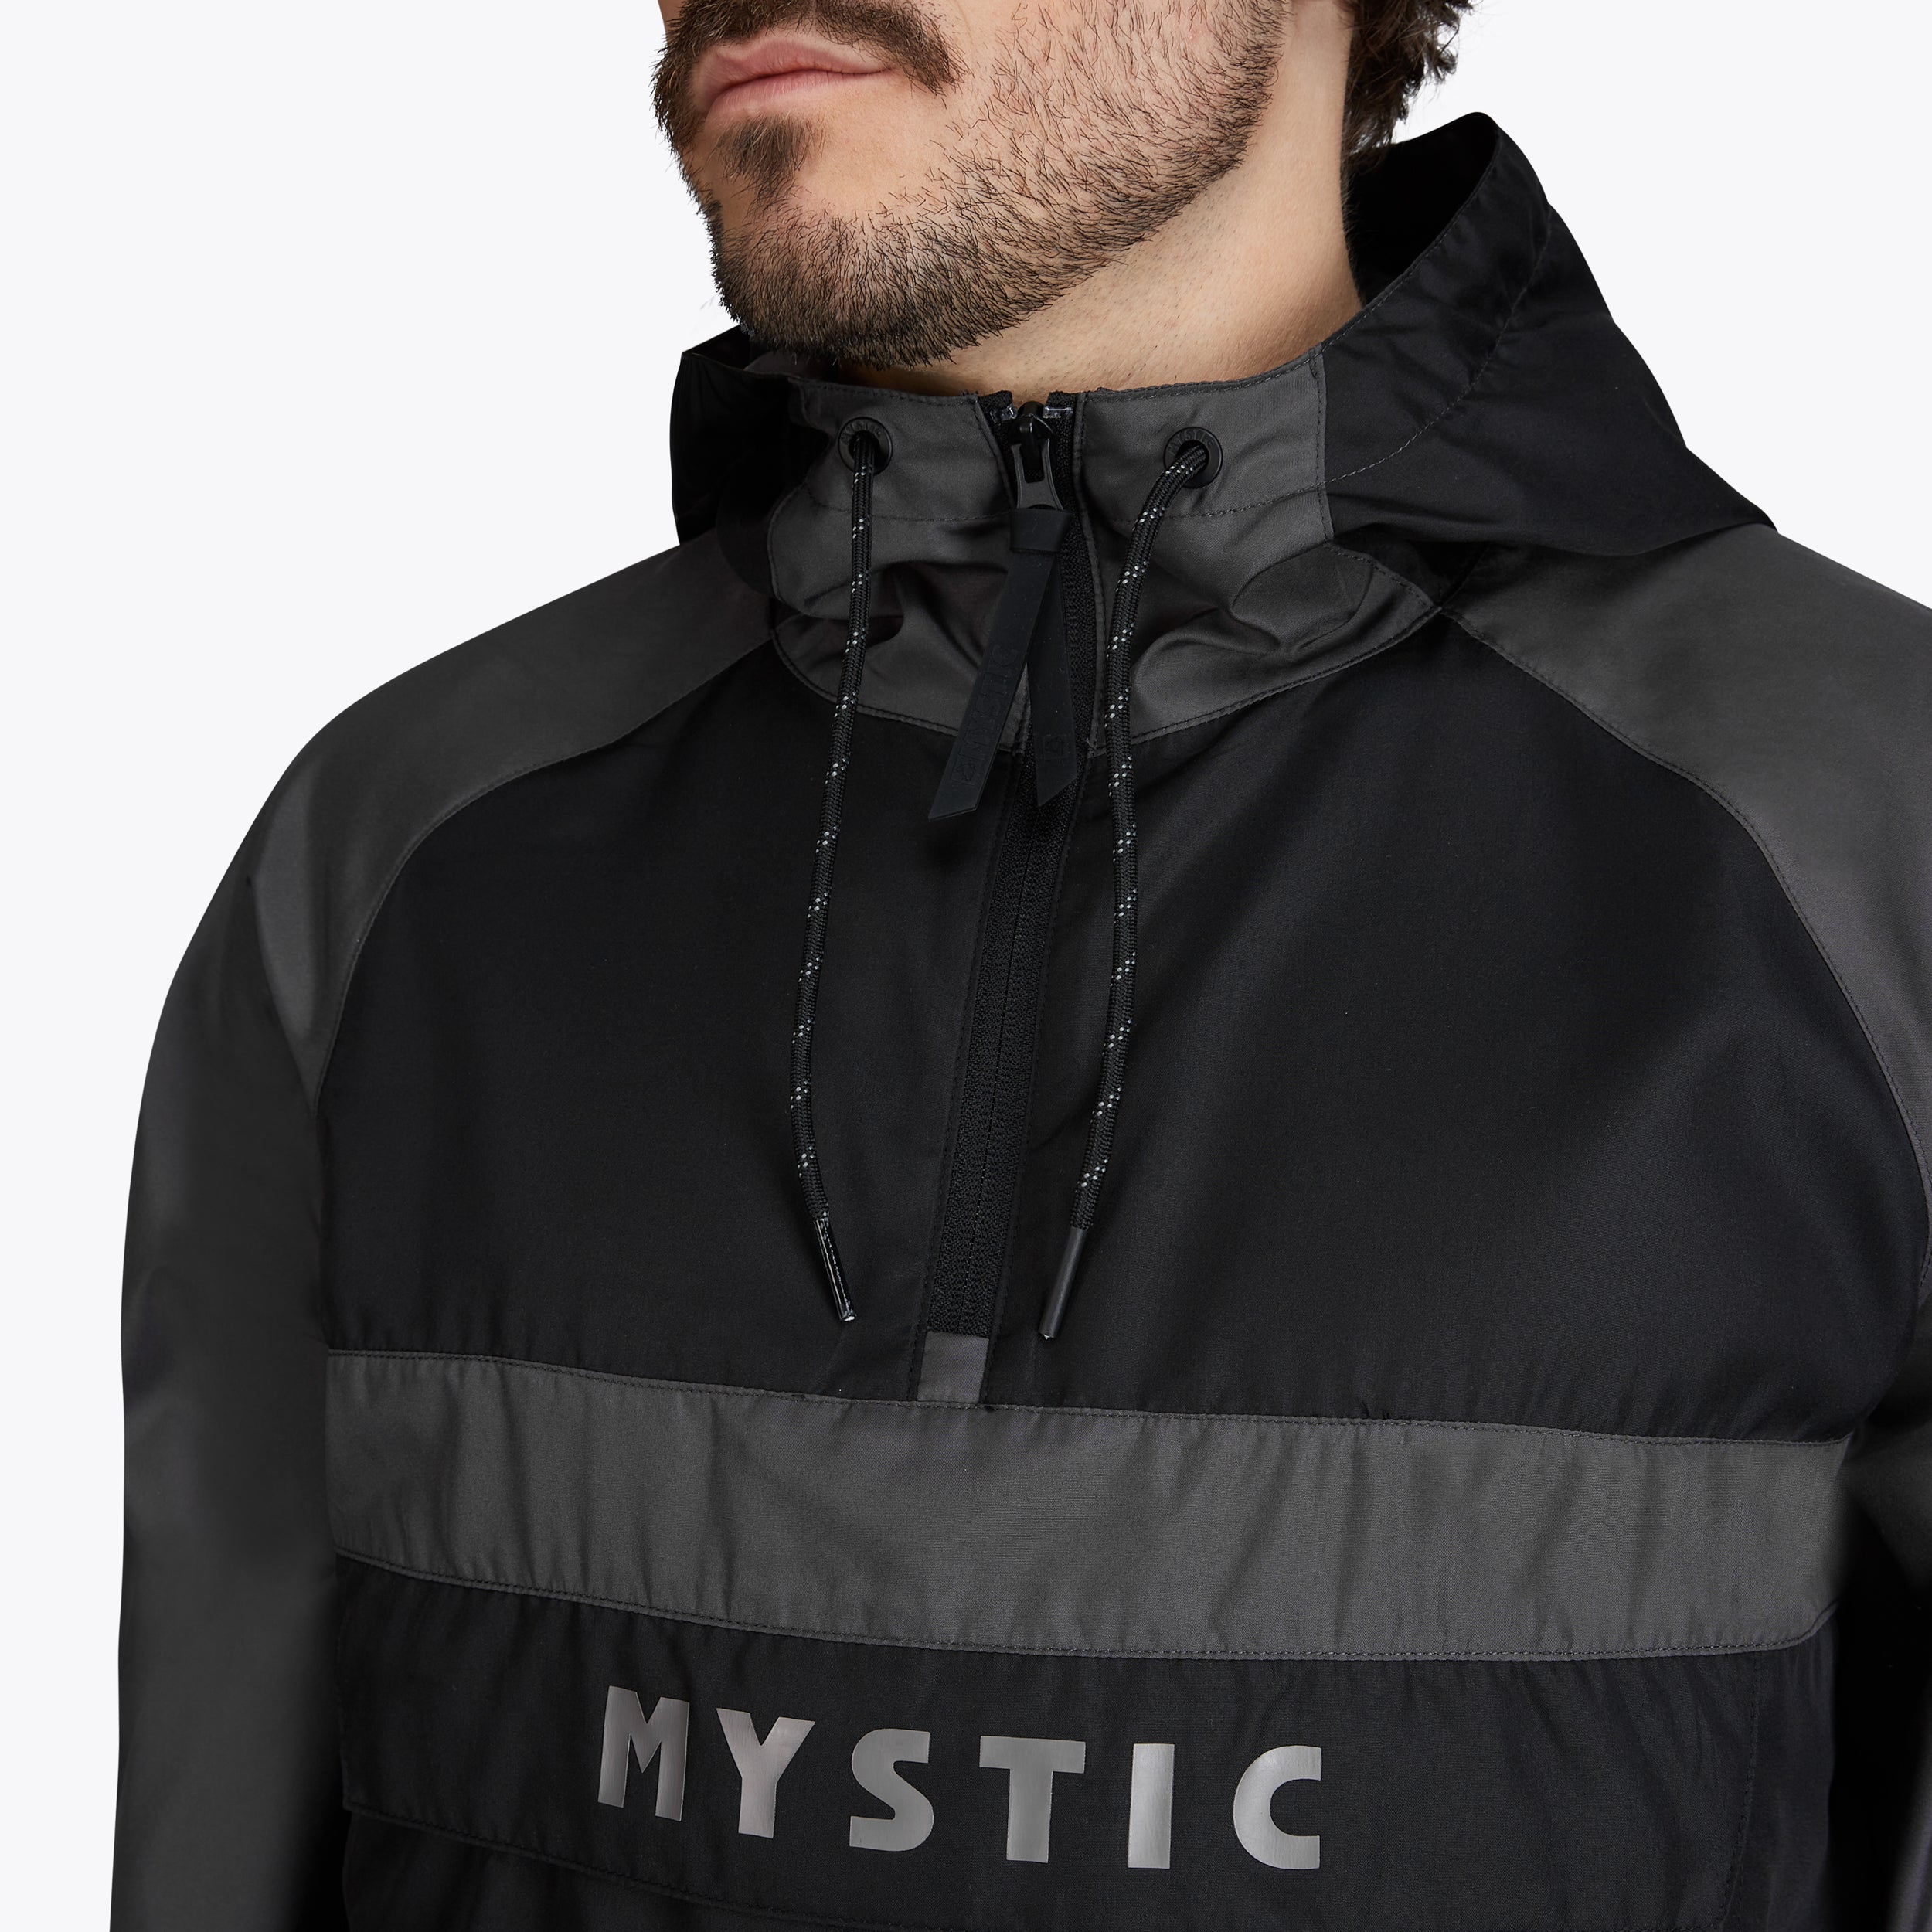 Mystic Bittersweet Jacket